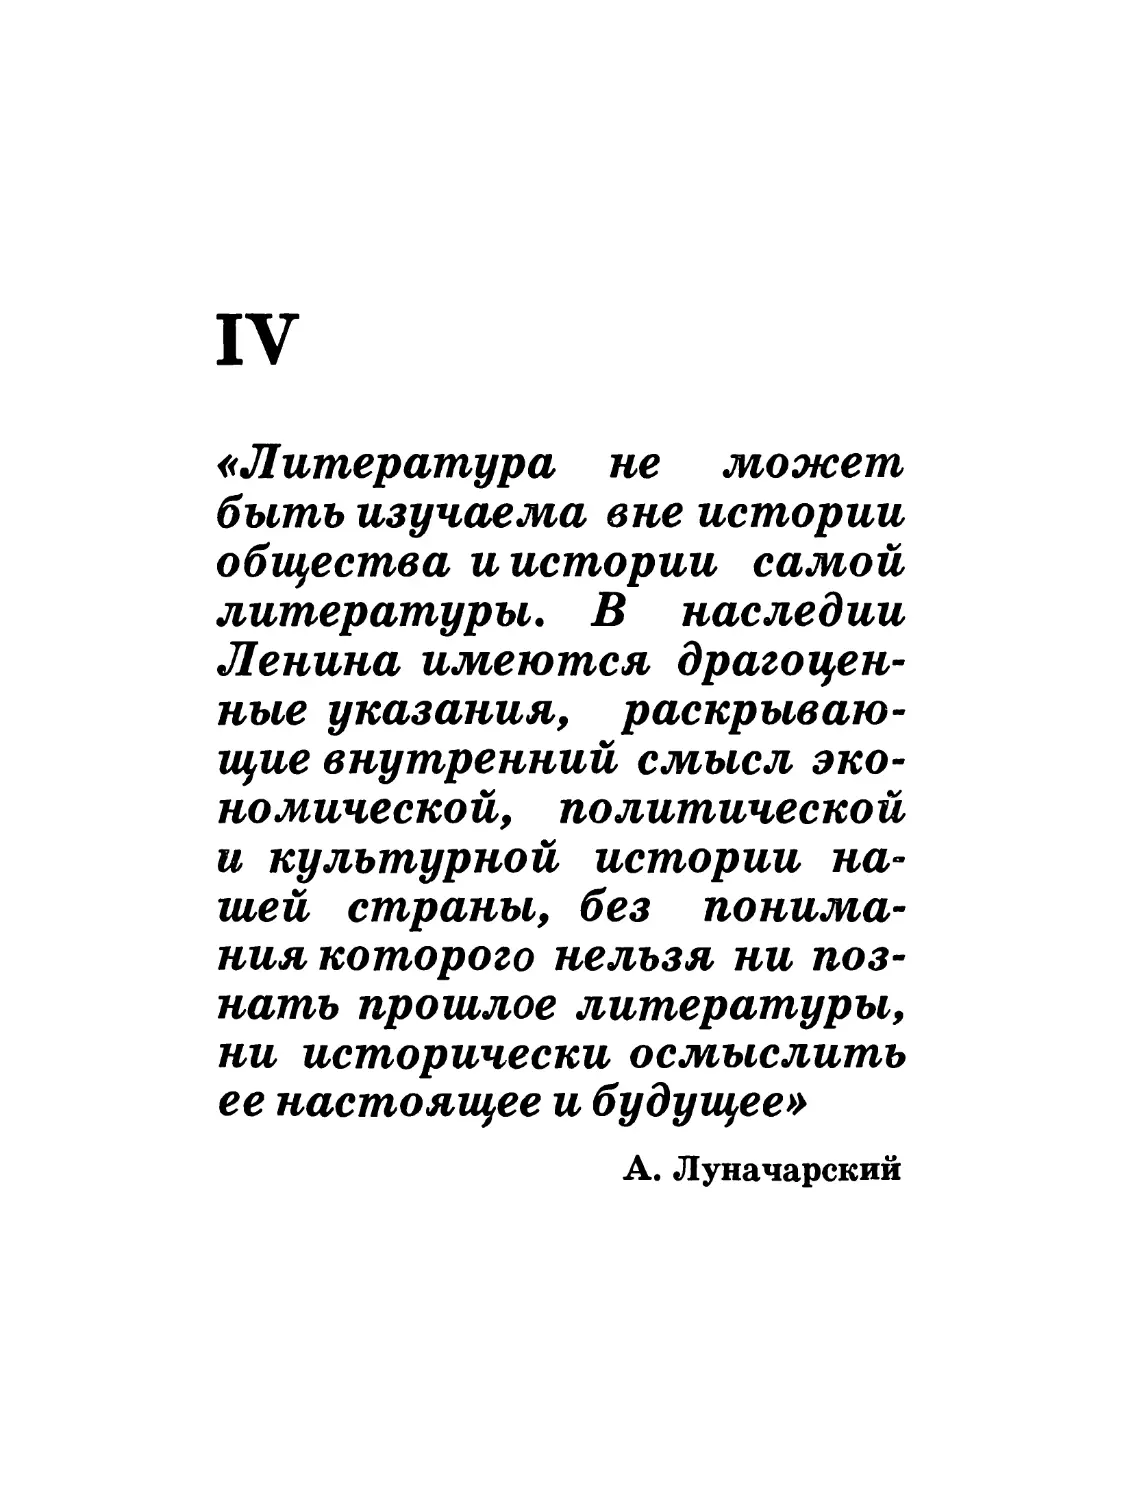 IV. Ленин и литературоведение